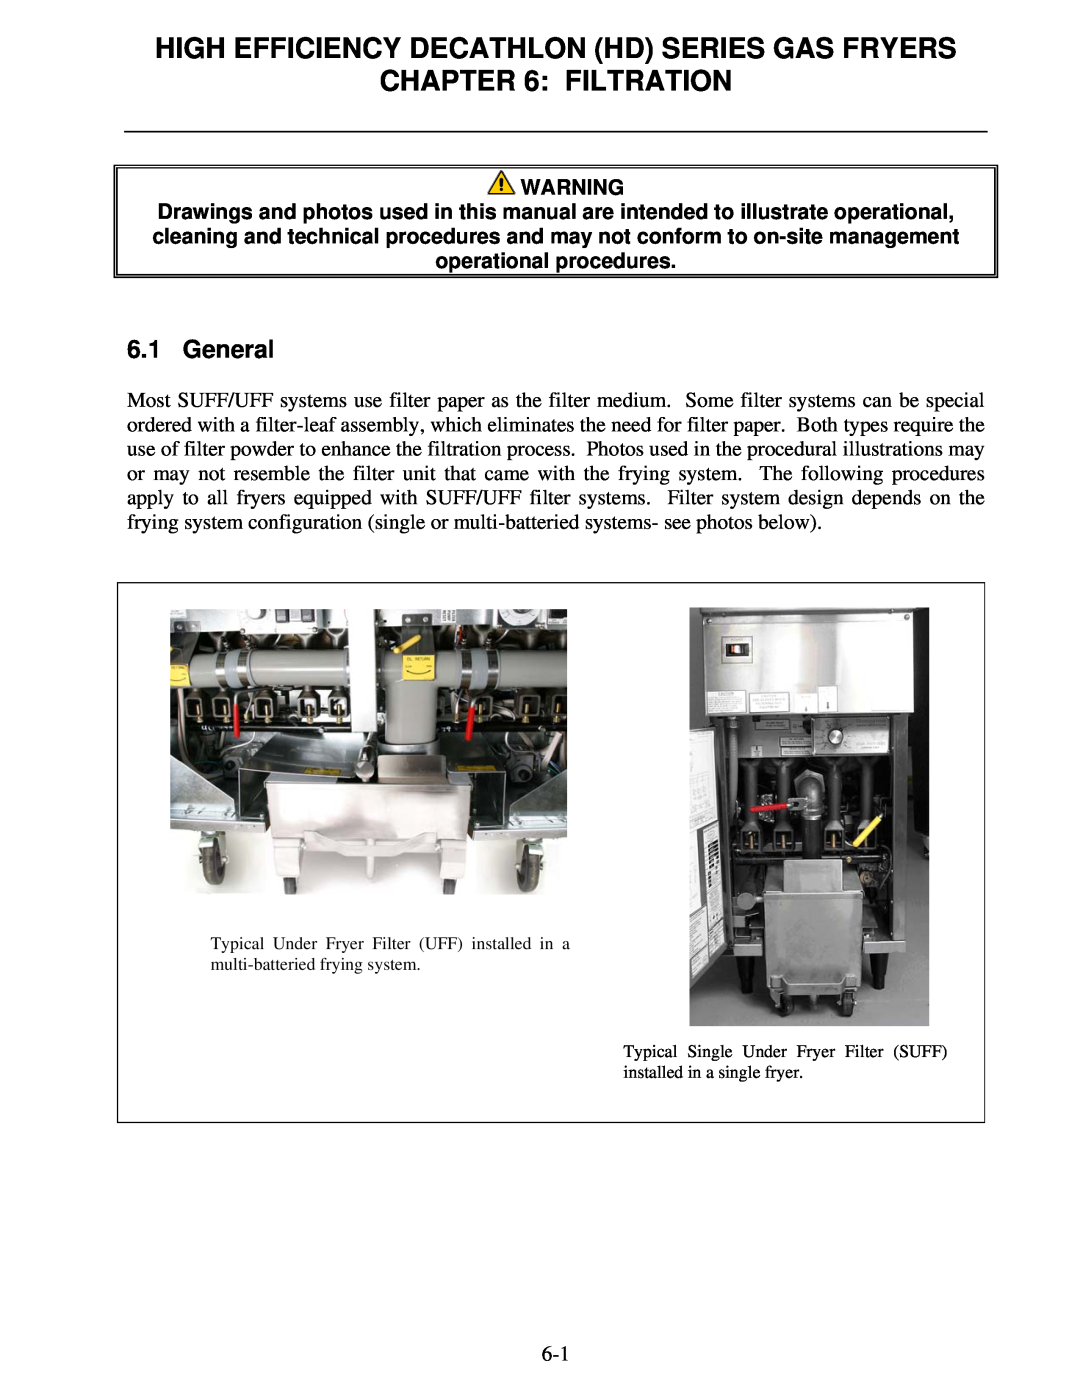 Frymaster FPHD65 operation manual Filtration, General, High Efficiency Decathlon Hd Series Gas Fryers 